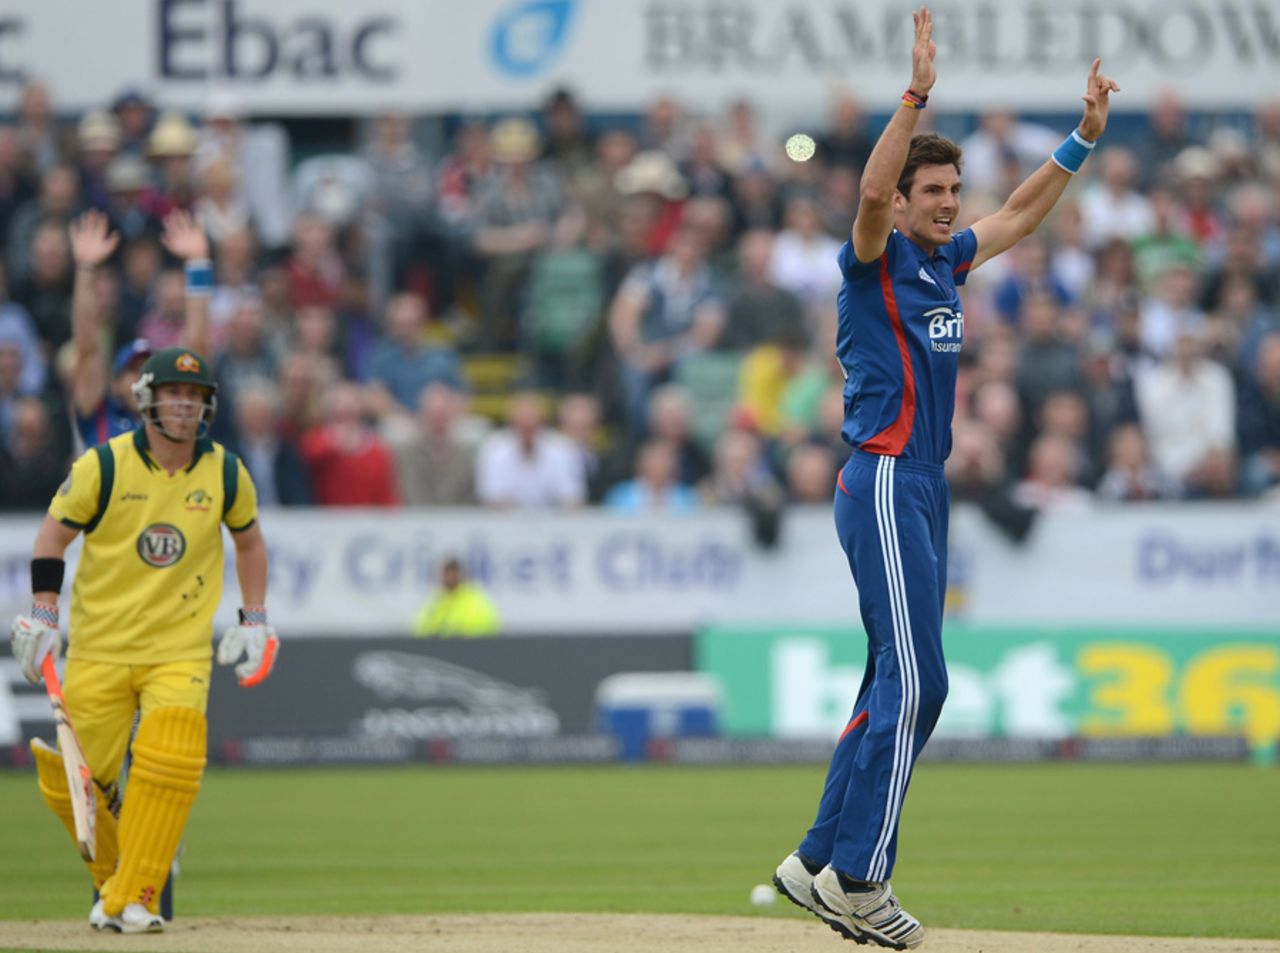 Steven Finn struck early to peg Australia back, England v Australia, 4th ODI, Chester-le-Street, July 7, 2012